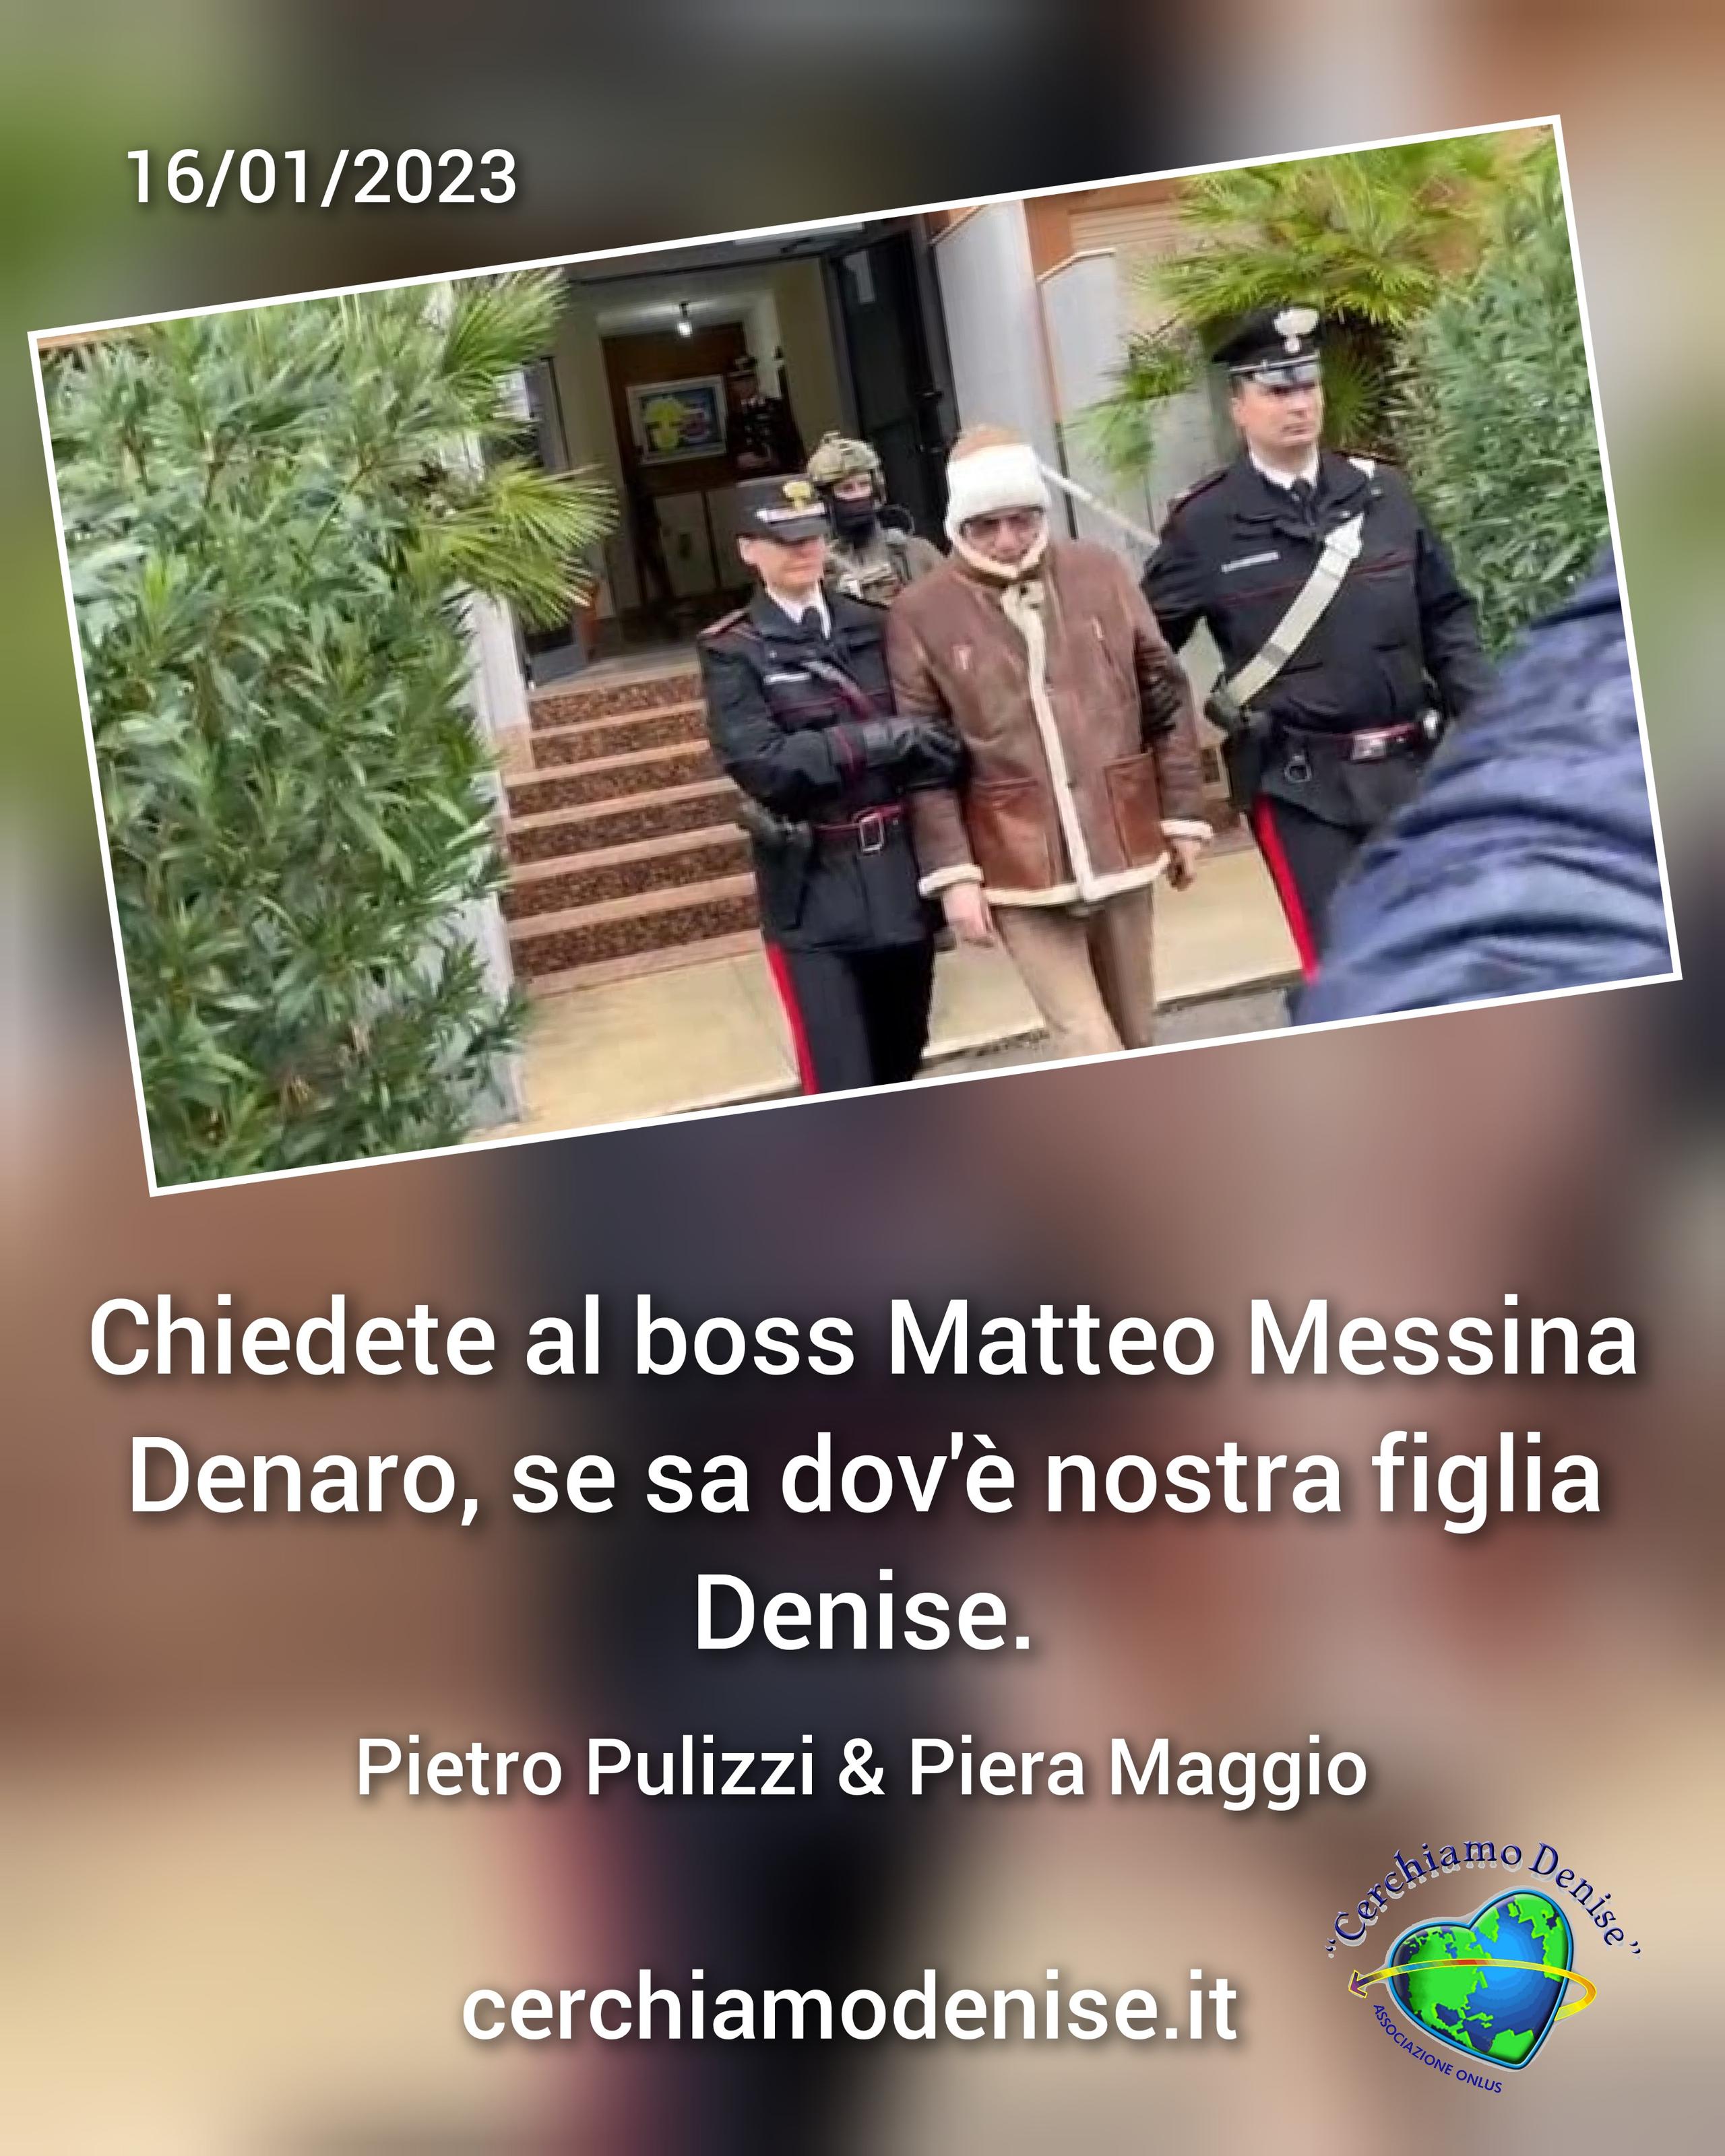 Pietro Pulizzi e Piera Maggio genitori di Denise: "CHIEDETE AL BOSS MATTEO MESSINA DENARO SE SA DOV'È DENISE"